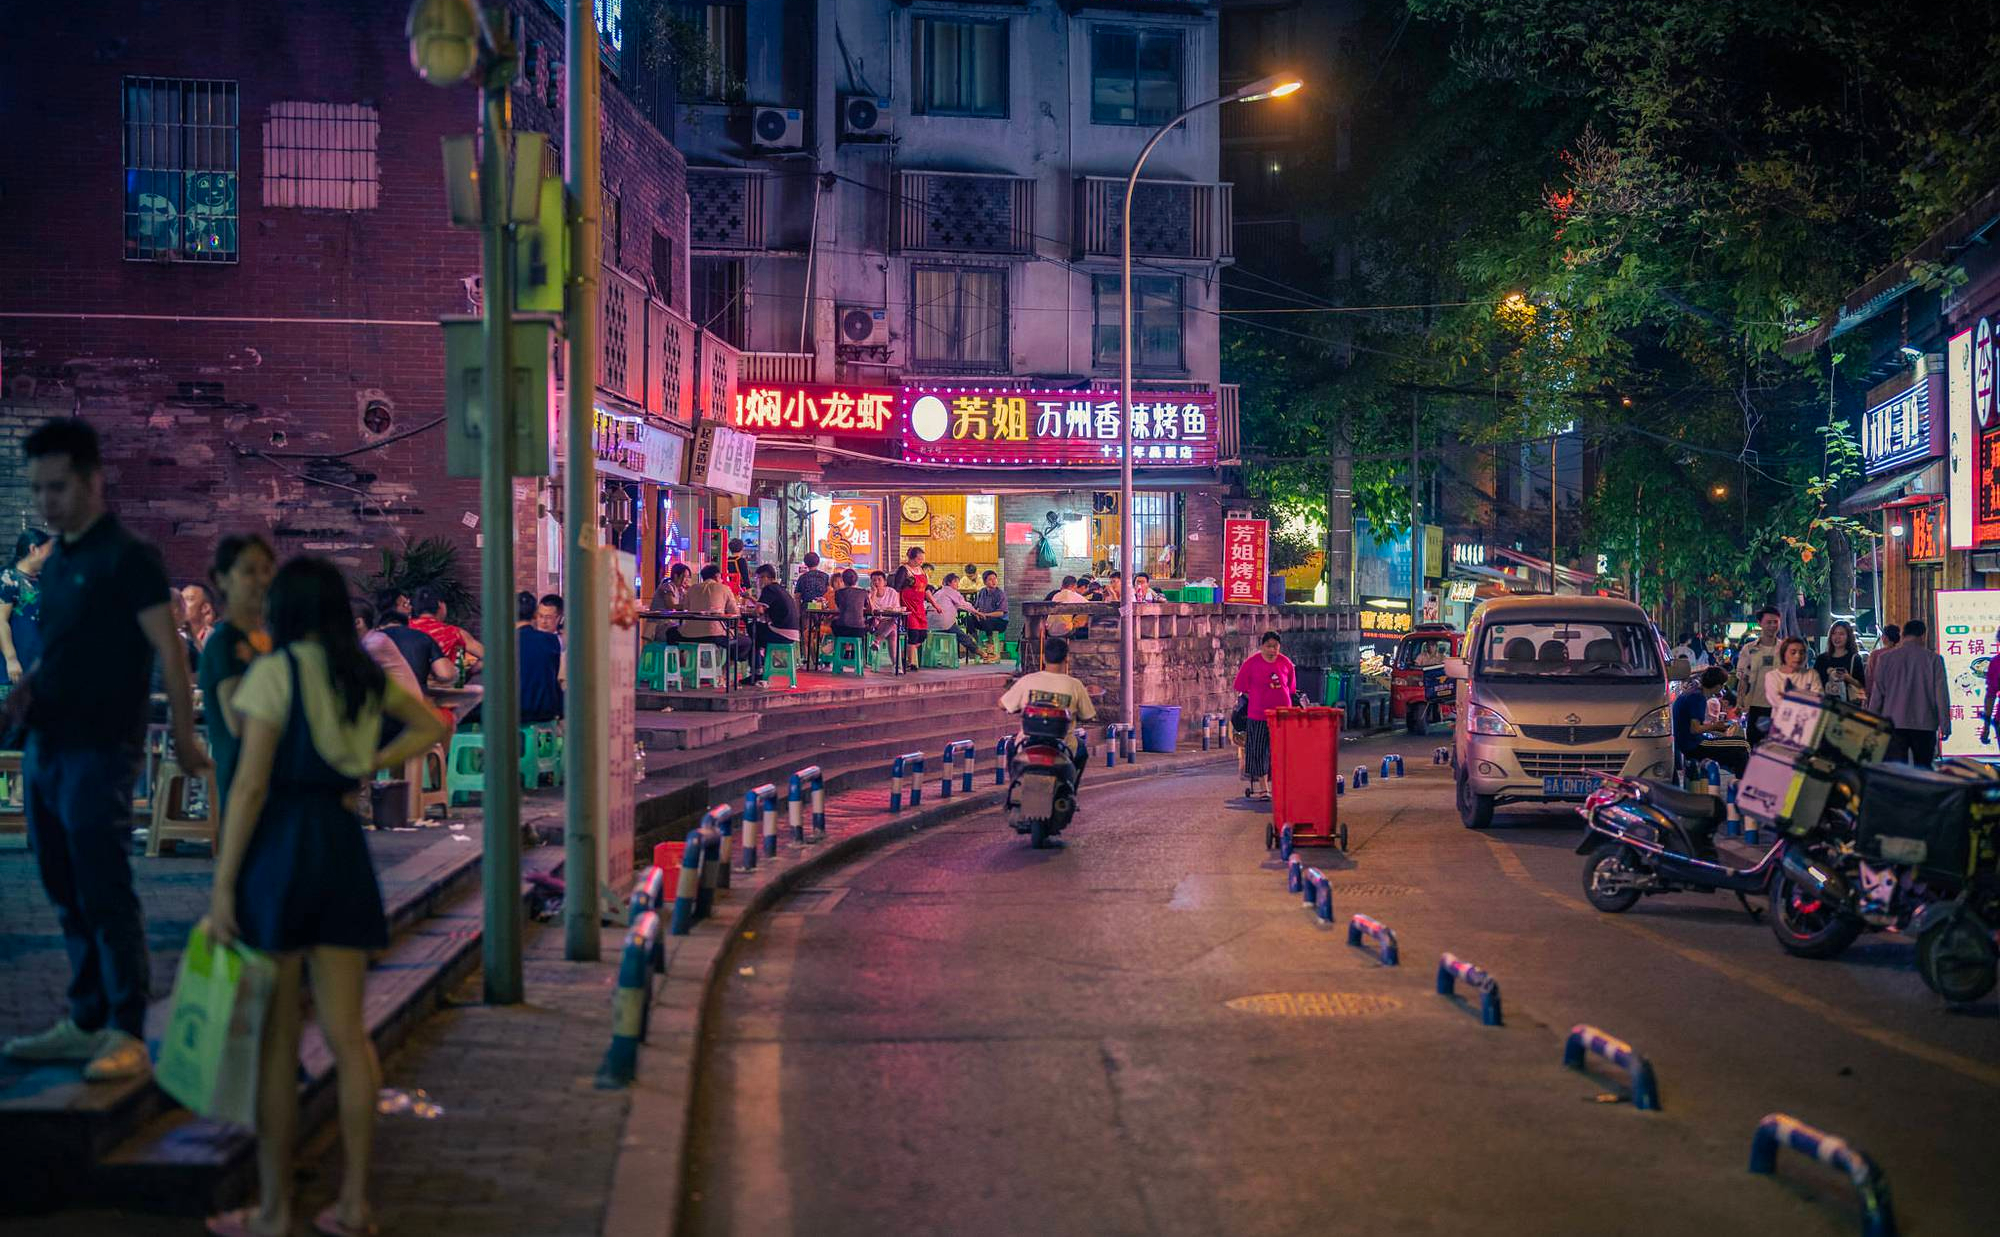 5 thành phố mệnh danh "Thánh địa mỹ nhân" của Trung Quốc: Cảnh đã đẹp, người còn đẹp hơn! - Ảnh 1.